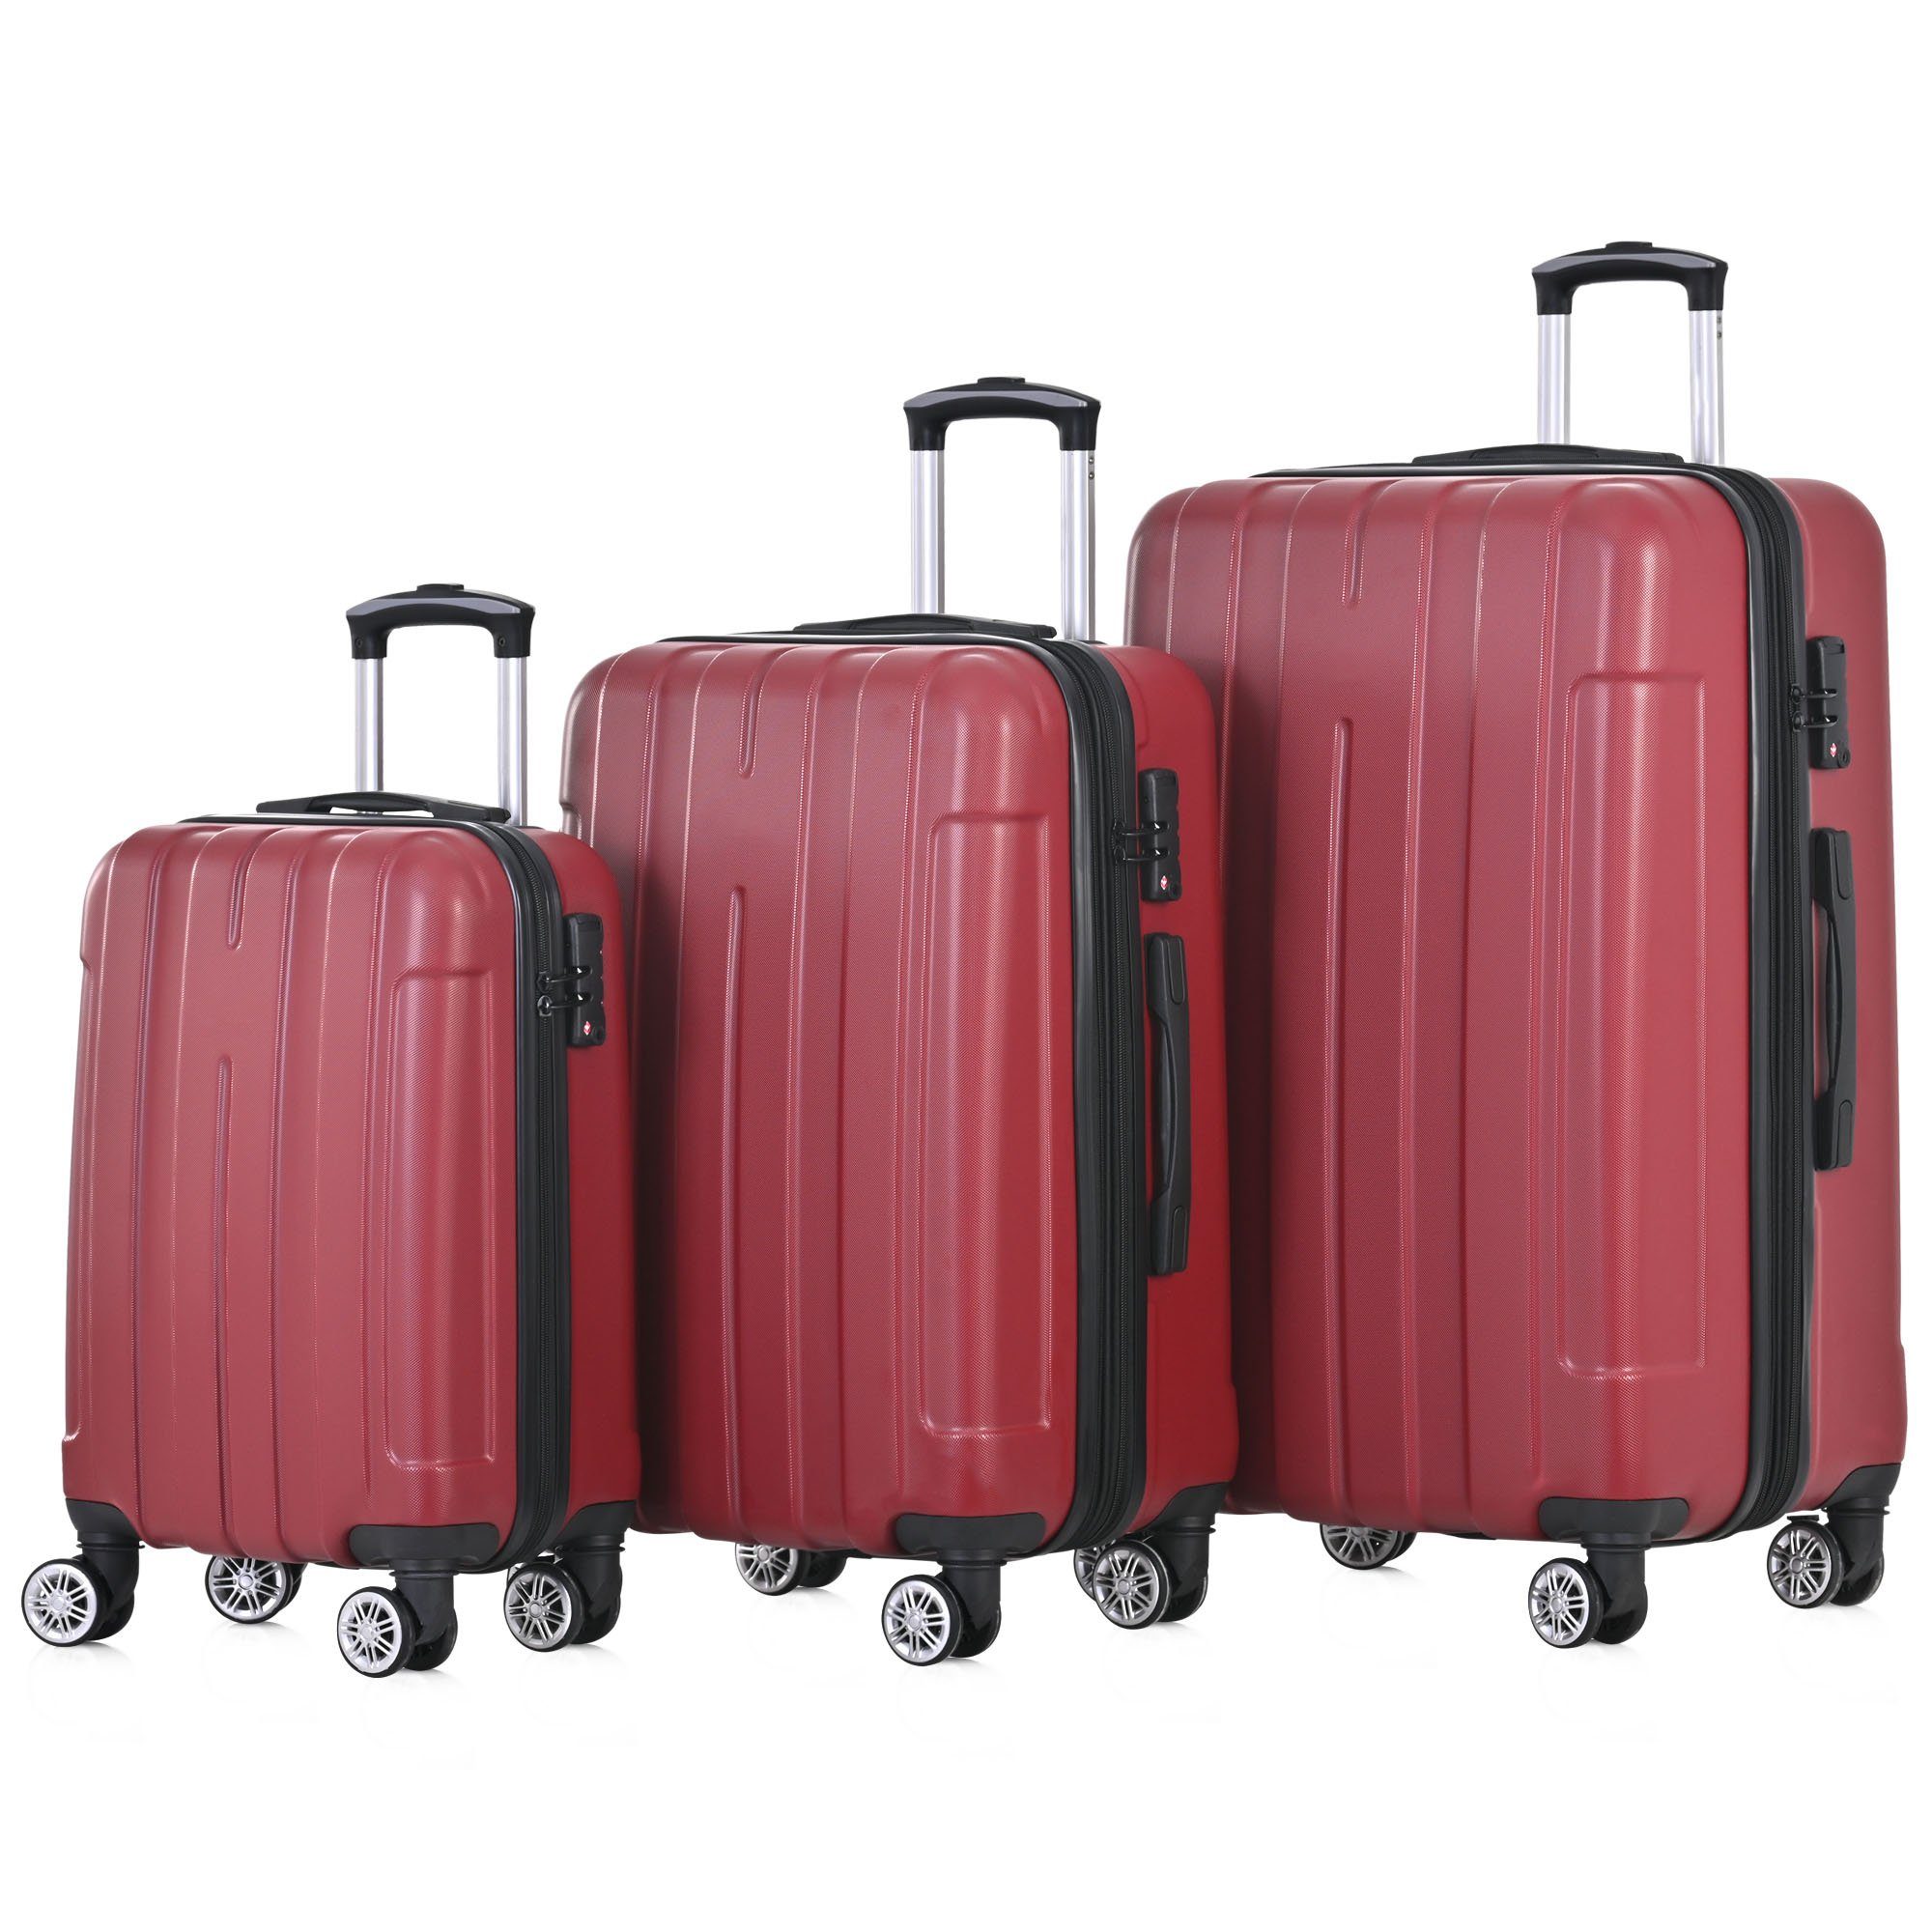 Handgepäck, Odikalo TSA-Schloss, rosarot Farbe M-L-XL-Set, viele Handgepäckkoffer Universalrad,